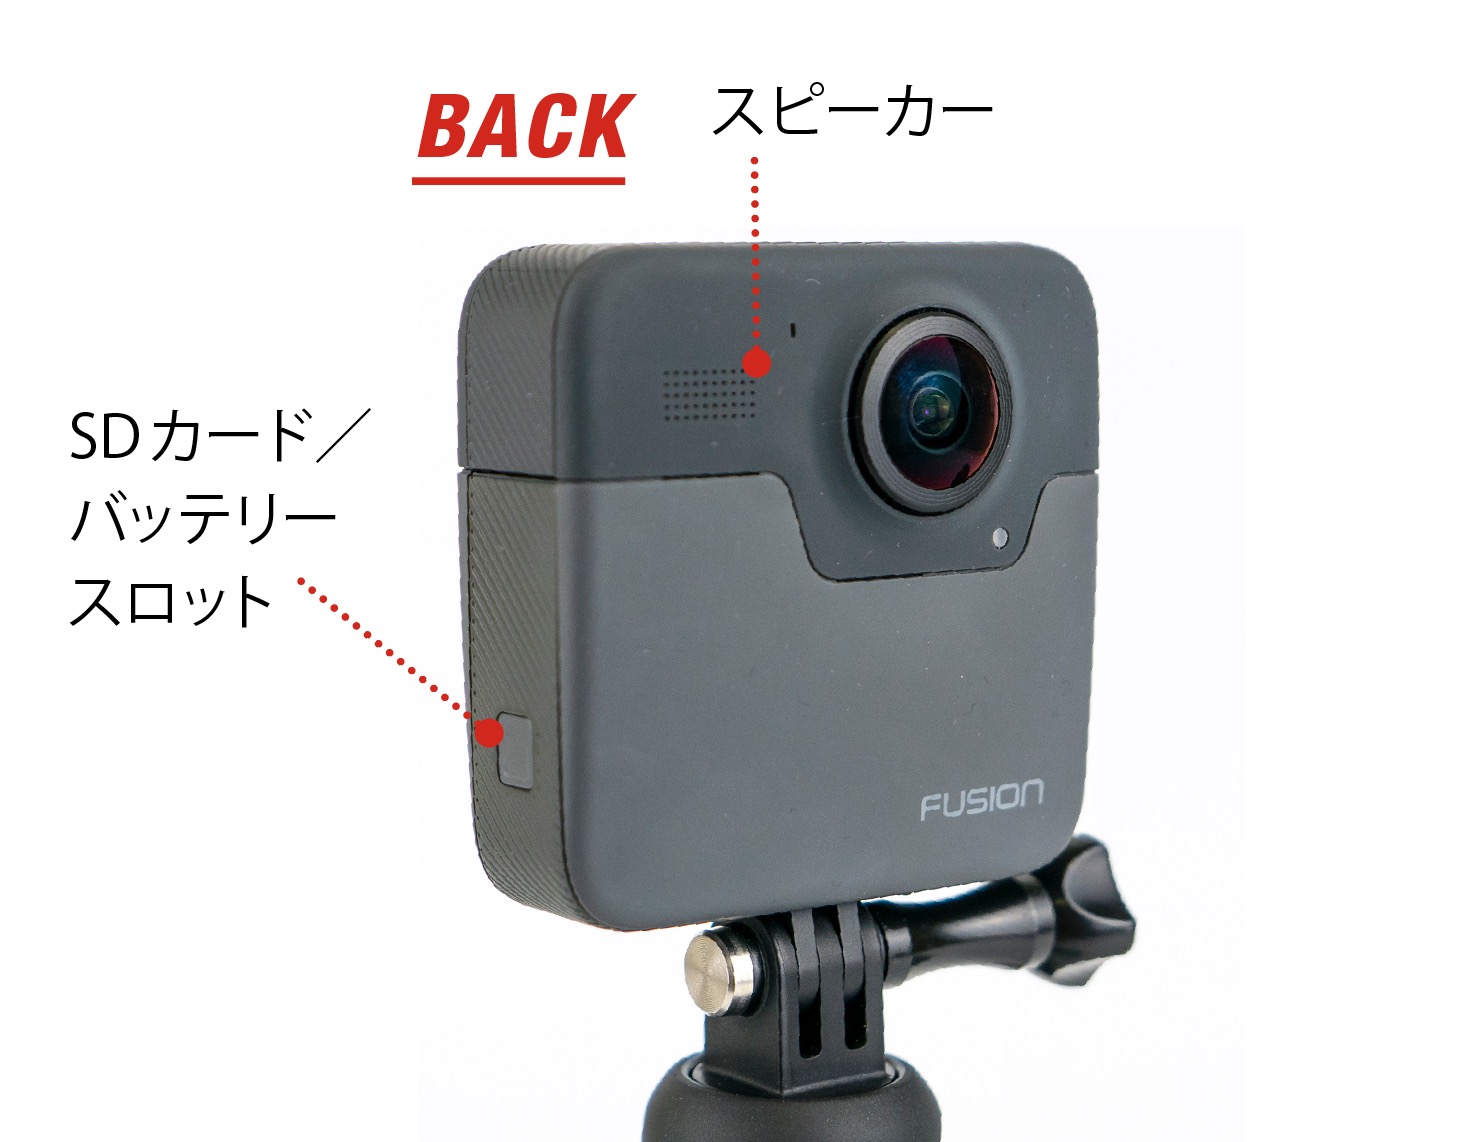 全方位撮って後からカメラワークをつけられる360度カメラ・GoPro Fusion の愉しみ方【カメラ紹介編】 | VIDEO SALON